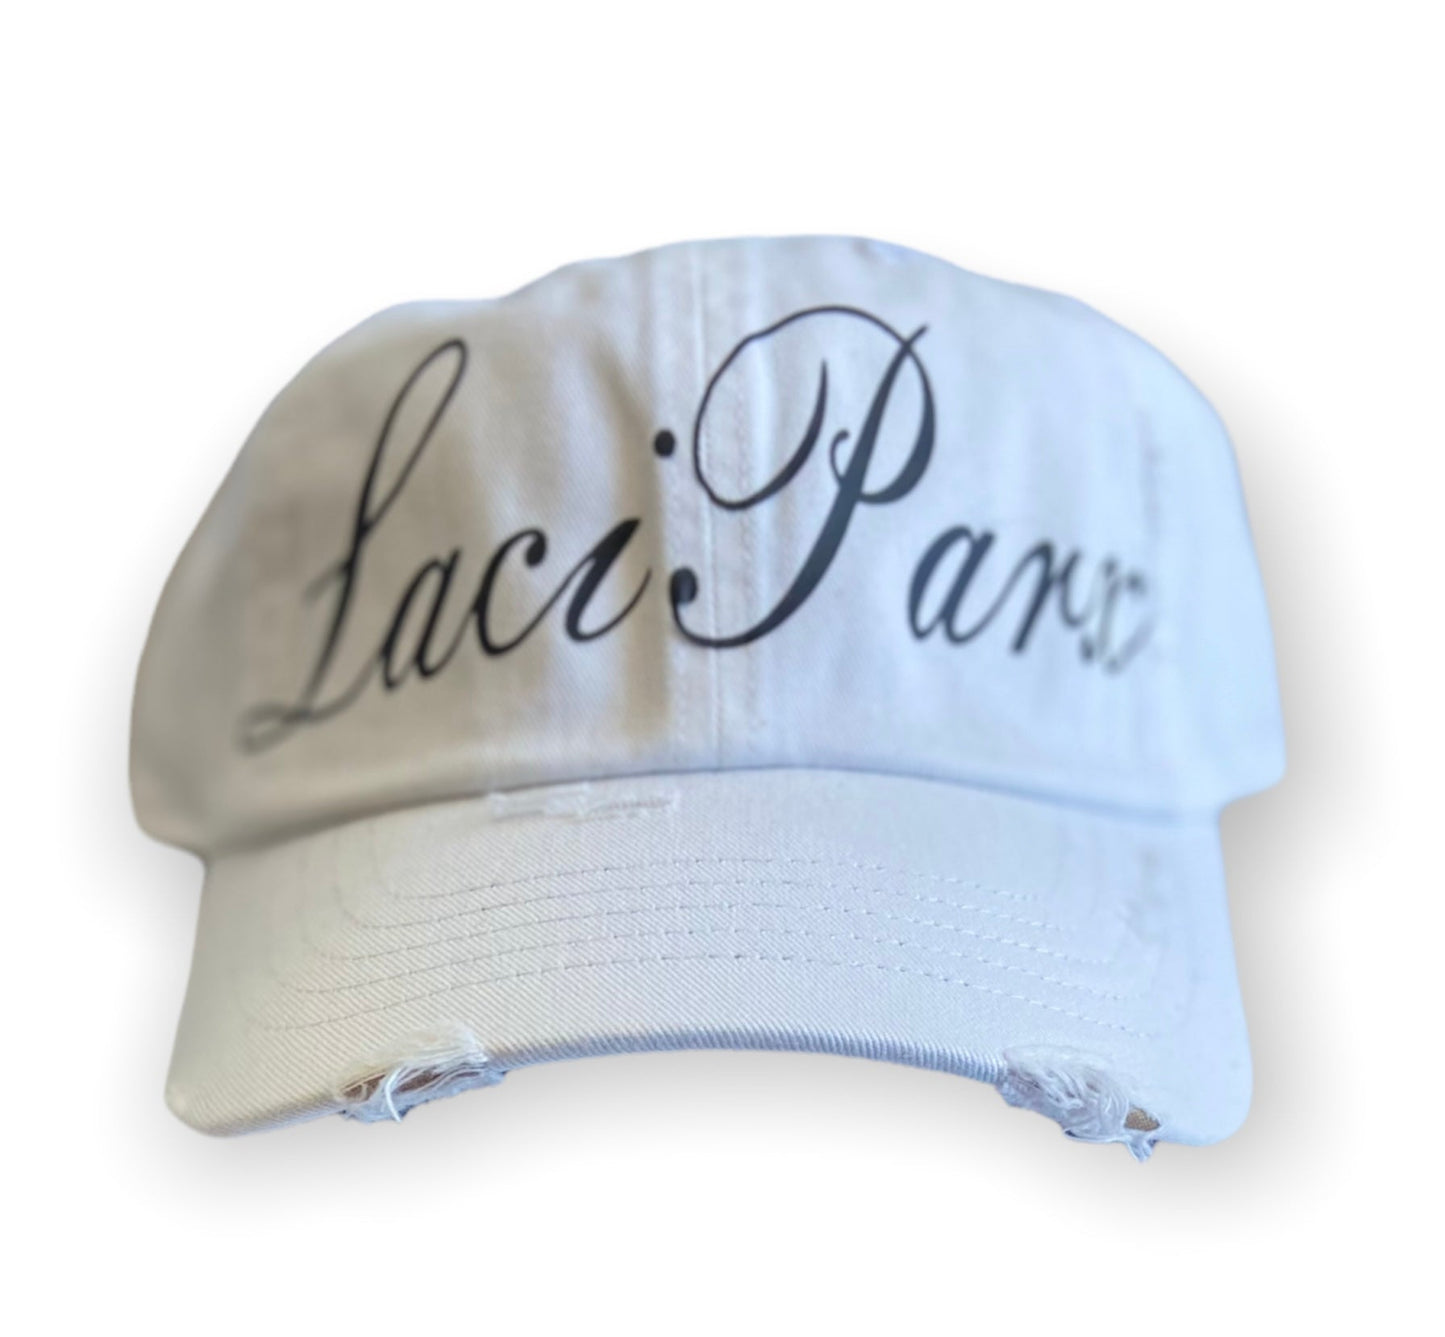 Laci Parx chapeau (hat) - Laci Parx